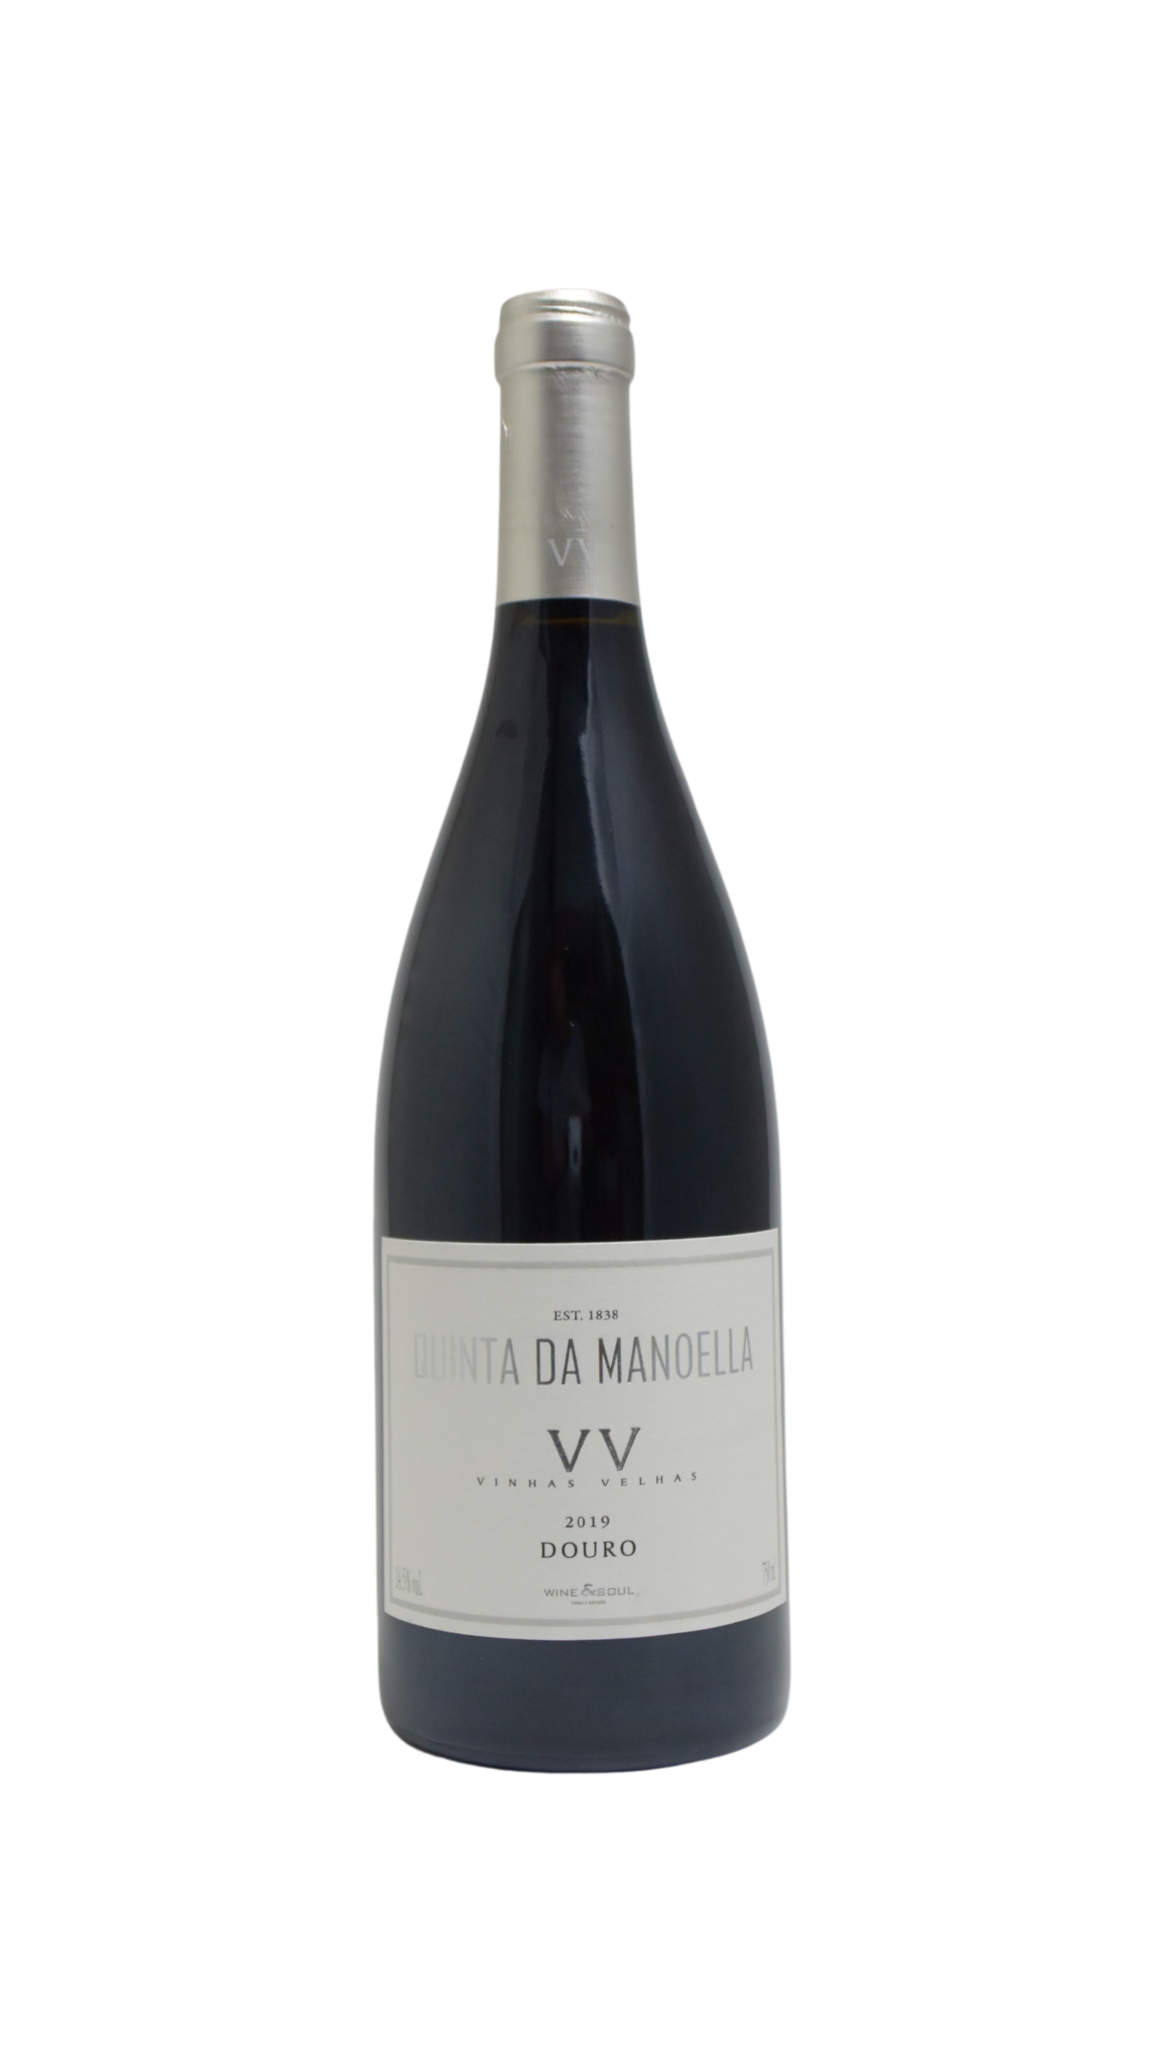 Wine & Soul “Quinta da Manoella” Vinhas Velhas Douro 2019 - Petit Philippe